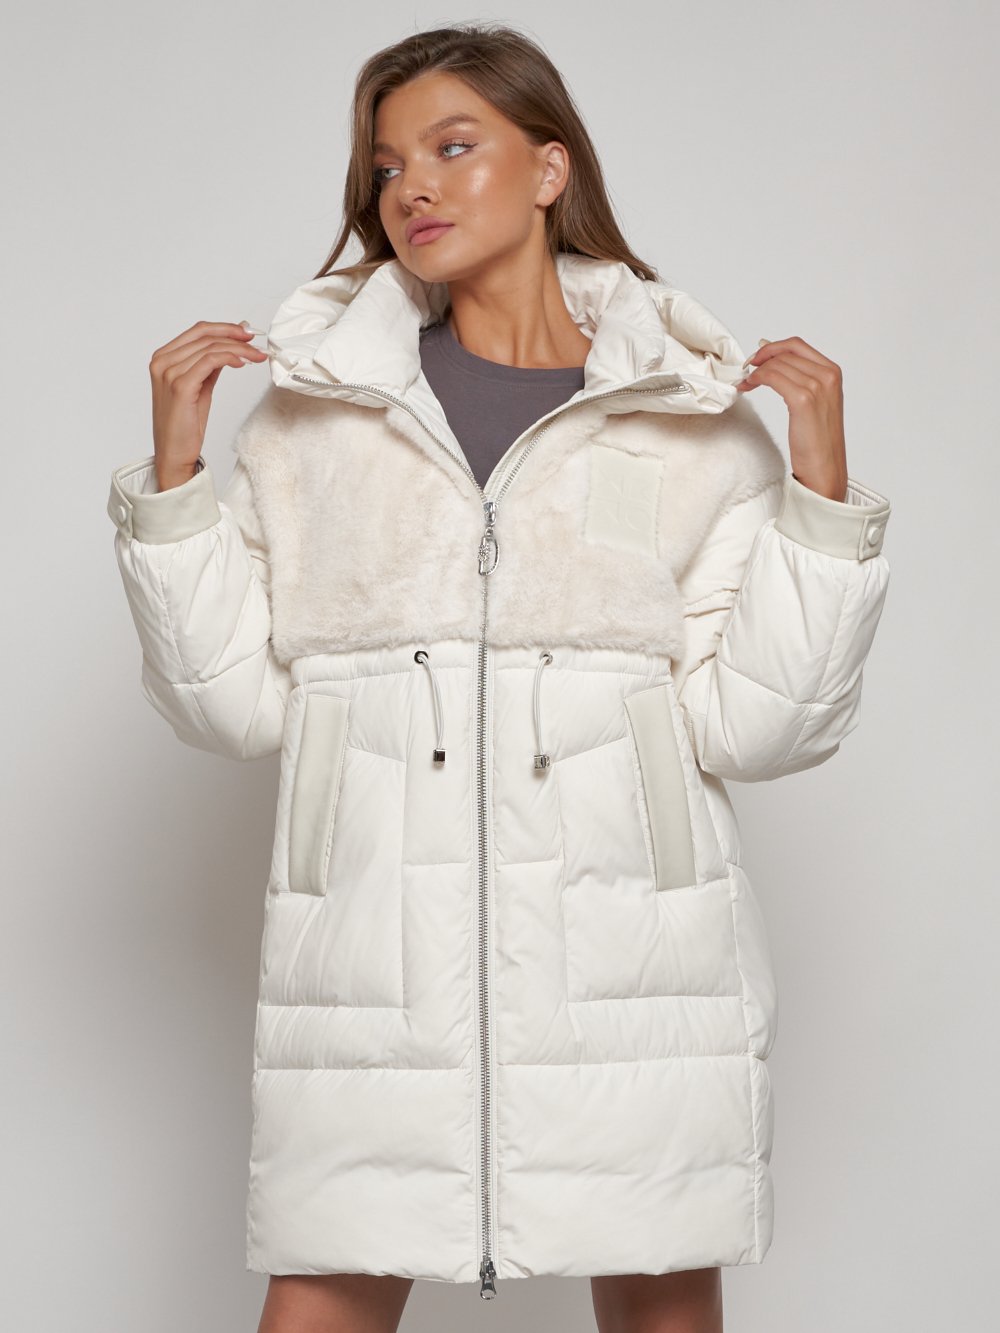 Купить куртку женскую зимнюю оптом от производителя недорого в Москве 133131B 1